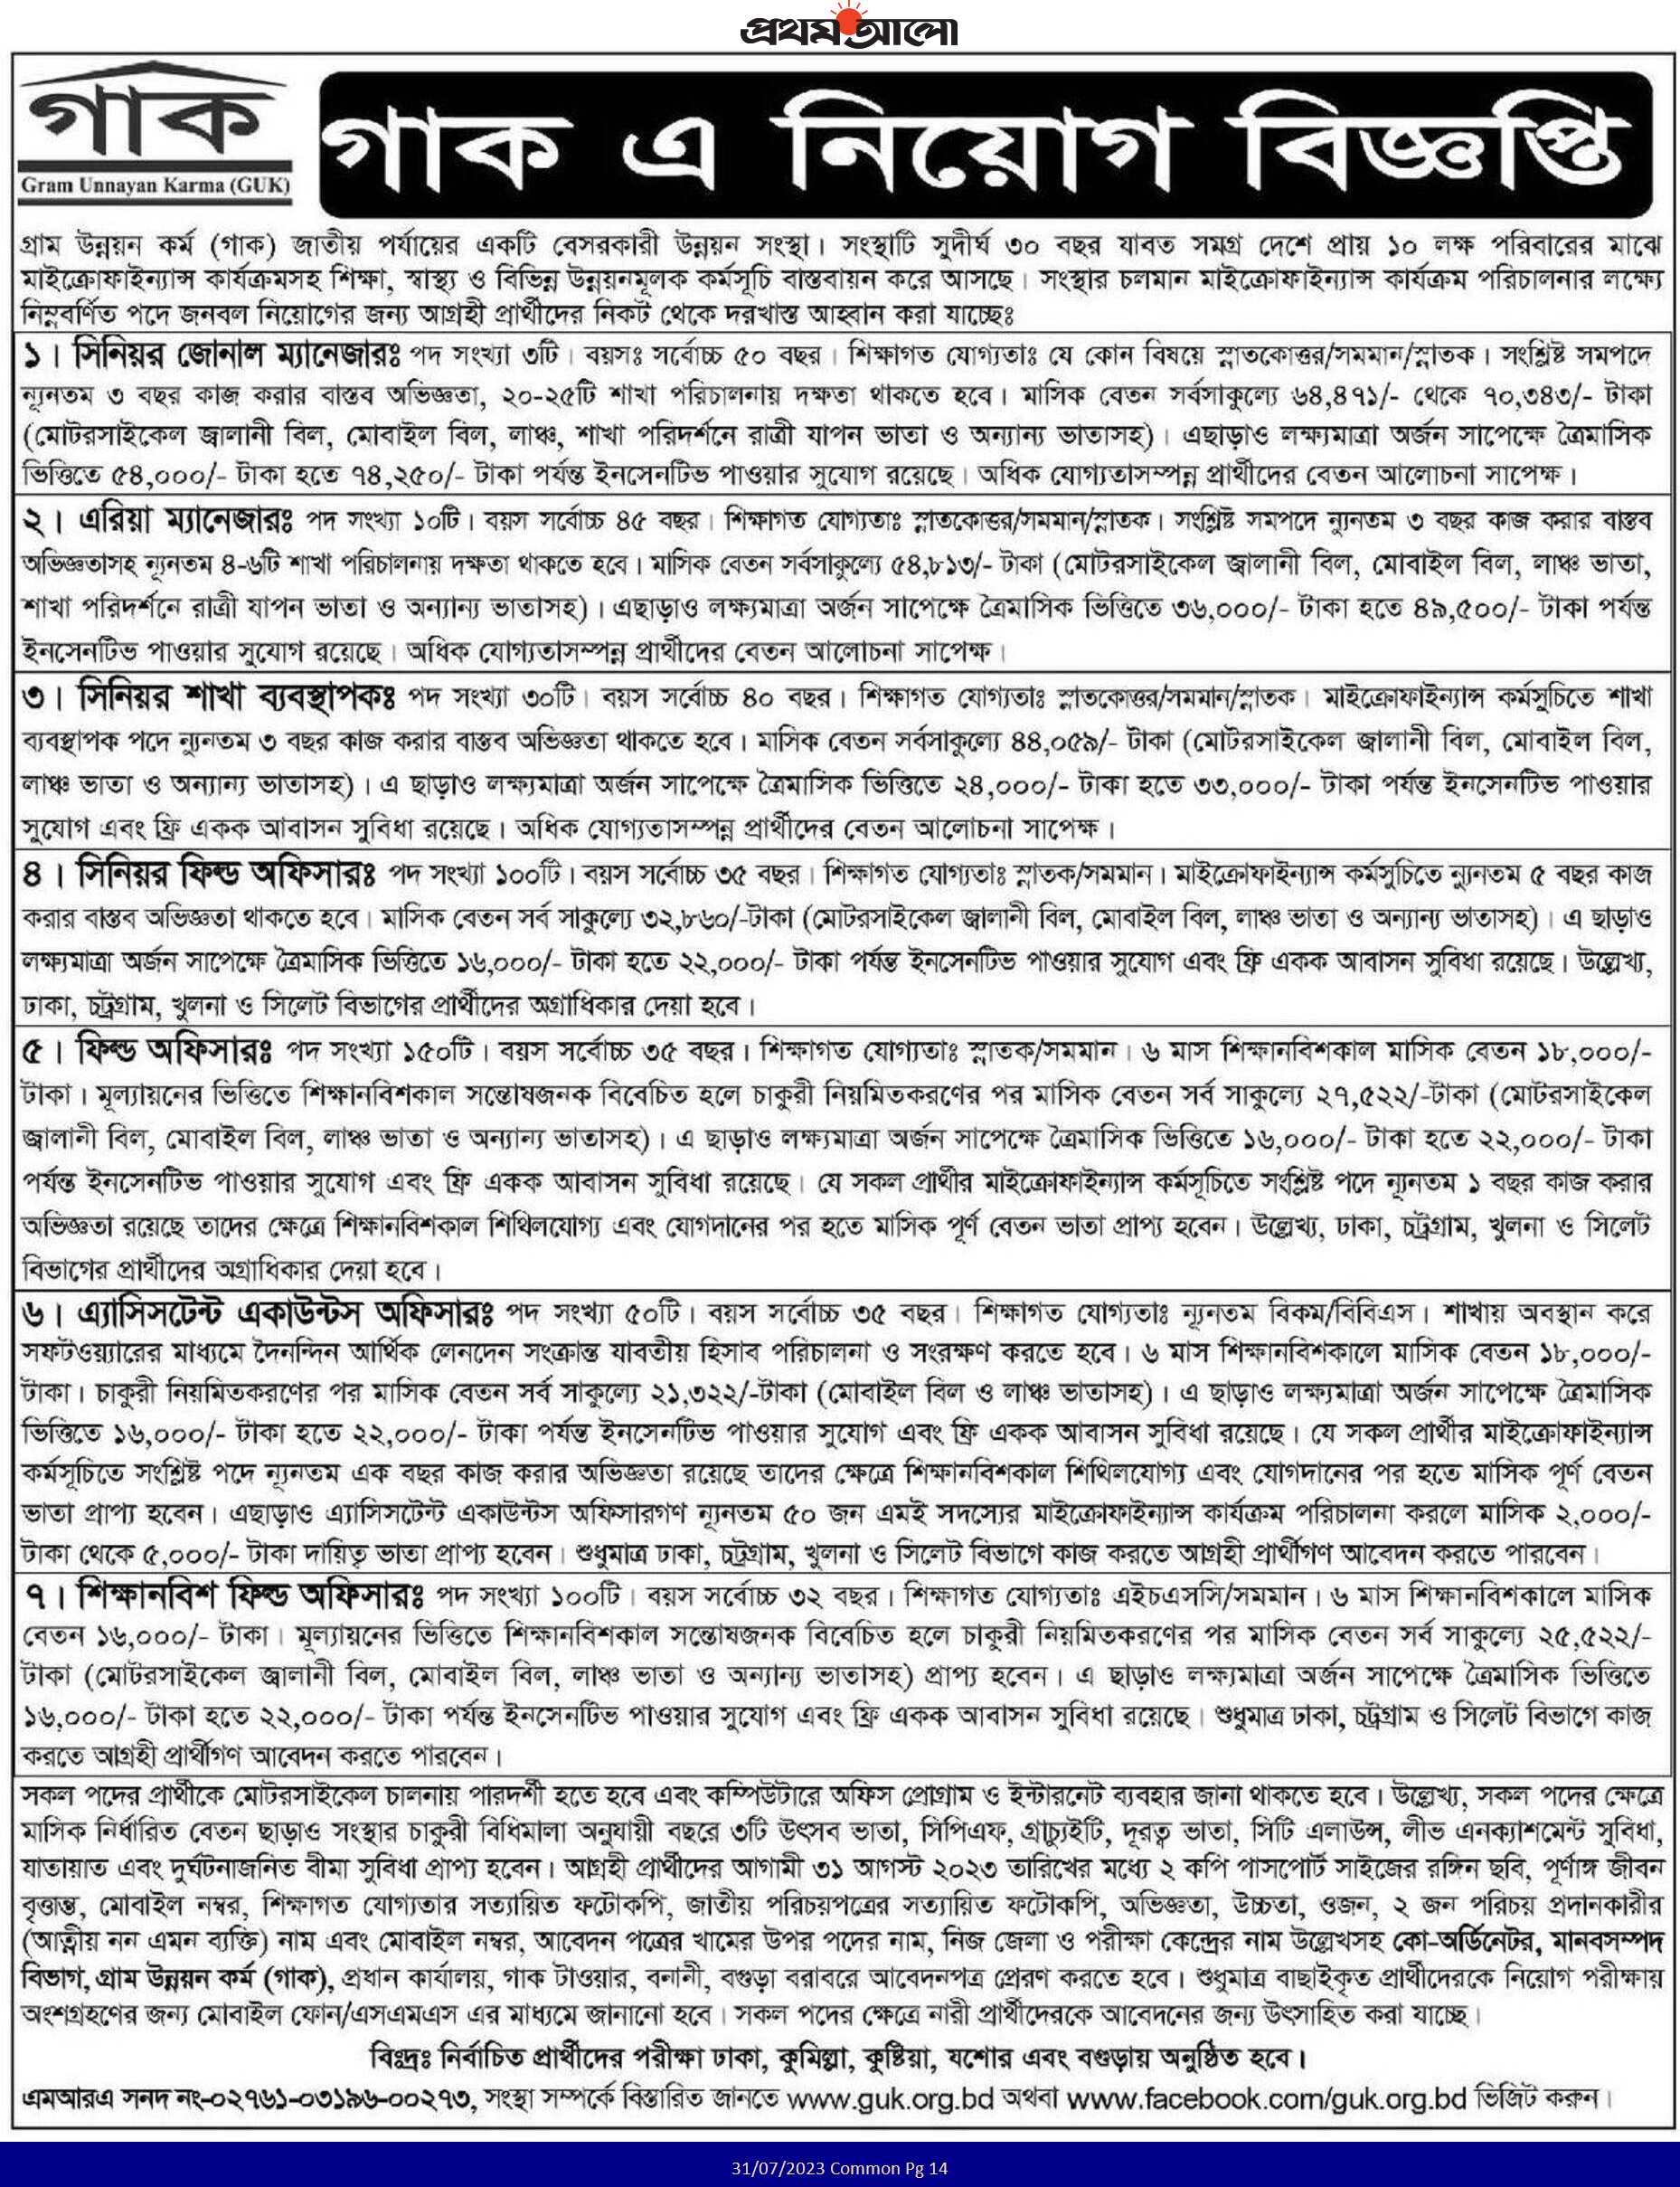 চলমান সকল এনজিও নিয়োগ বিজ্ঞপ্তি আগস্ট ২০২৩ - all ngo job circular august 2023 - এনজিও নিয়োগ বিজ্ঞপ্তি ২০২৩ - ngo job circular 2023 bangladesh - cox's bazar ngo job circular 2023 - এনজিও চাকরির খবর ২০২৩ - এনজিও চাকরির খবর ২০২৪